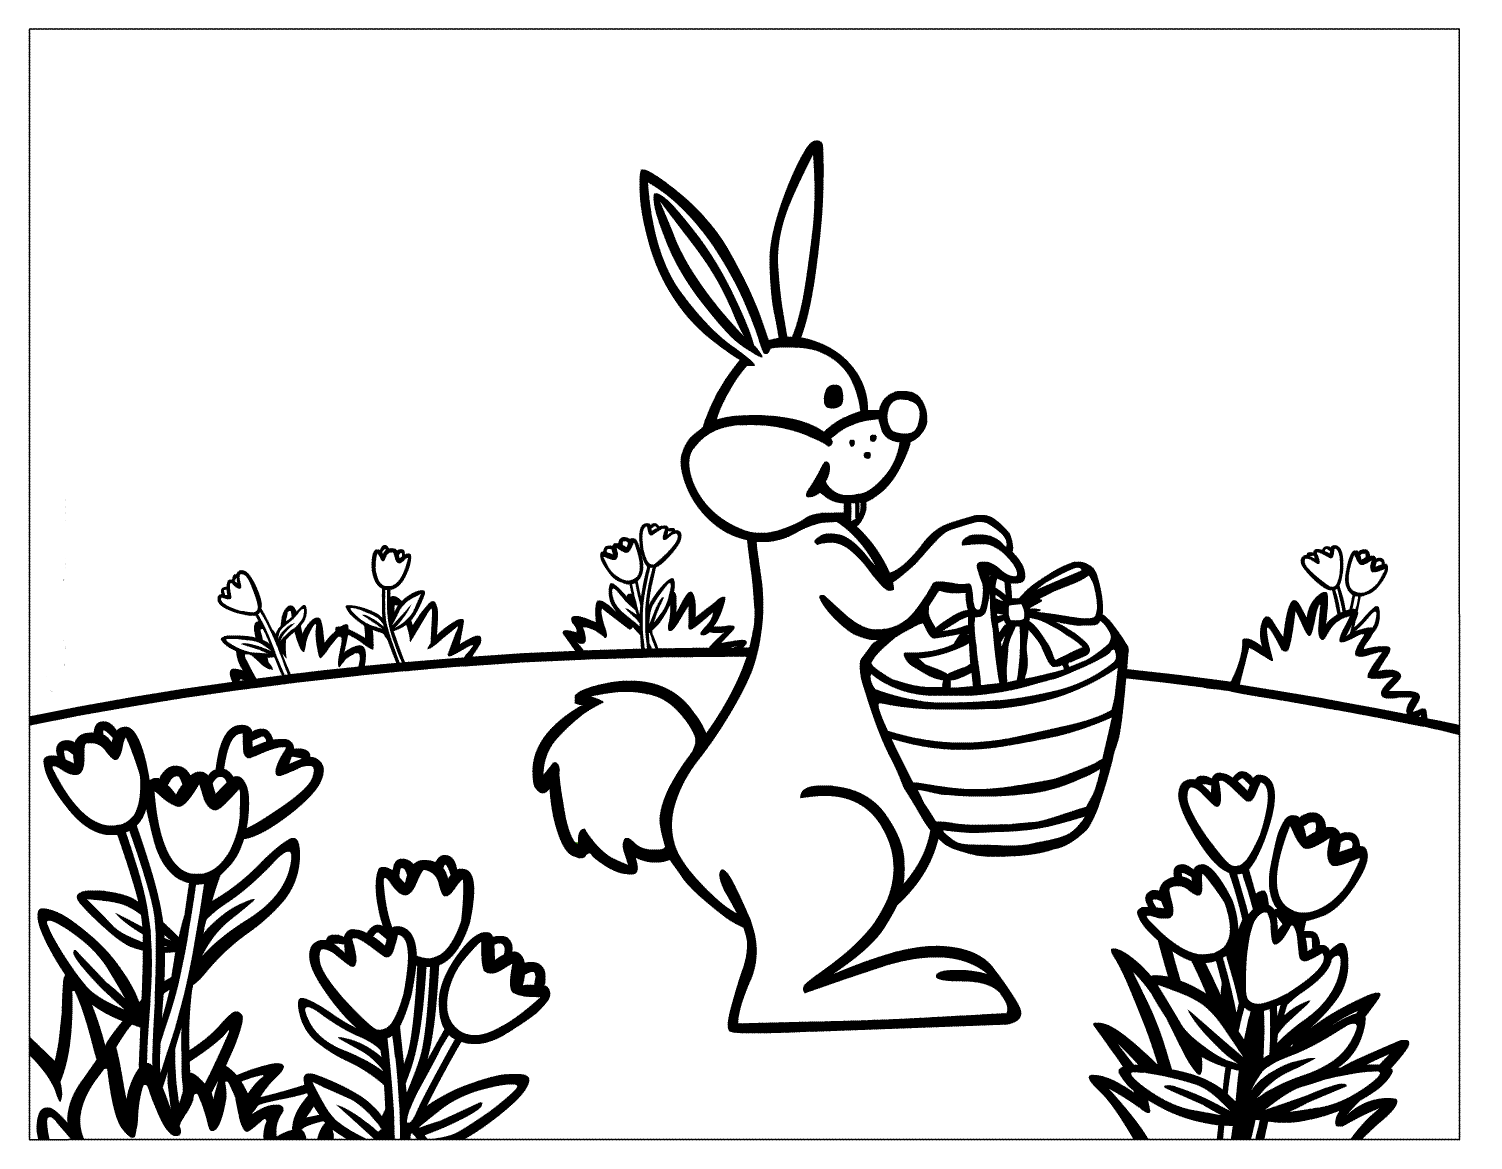 Tranh tô màu con thỏ đi dạo